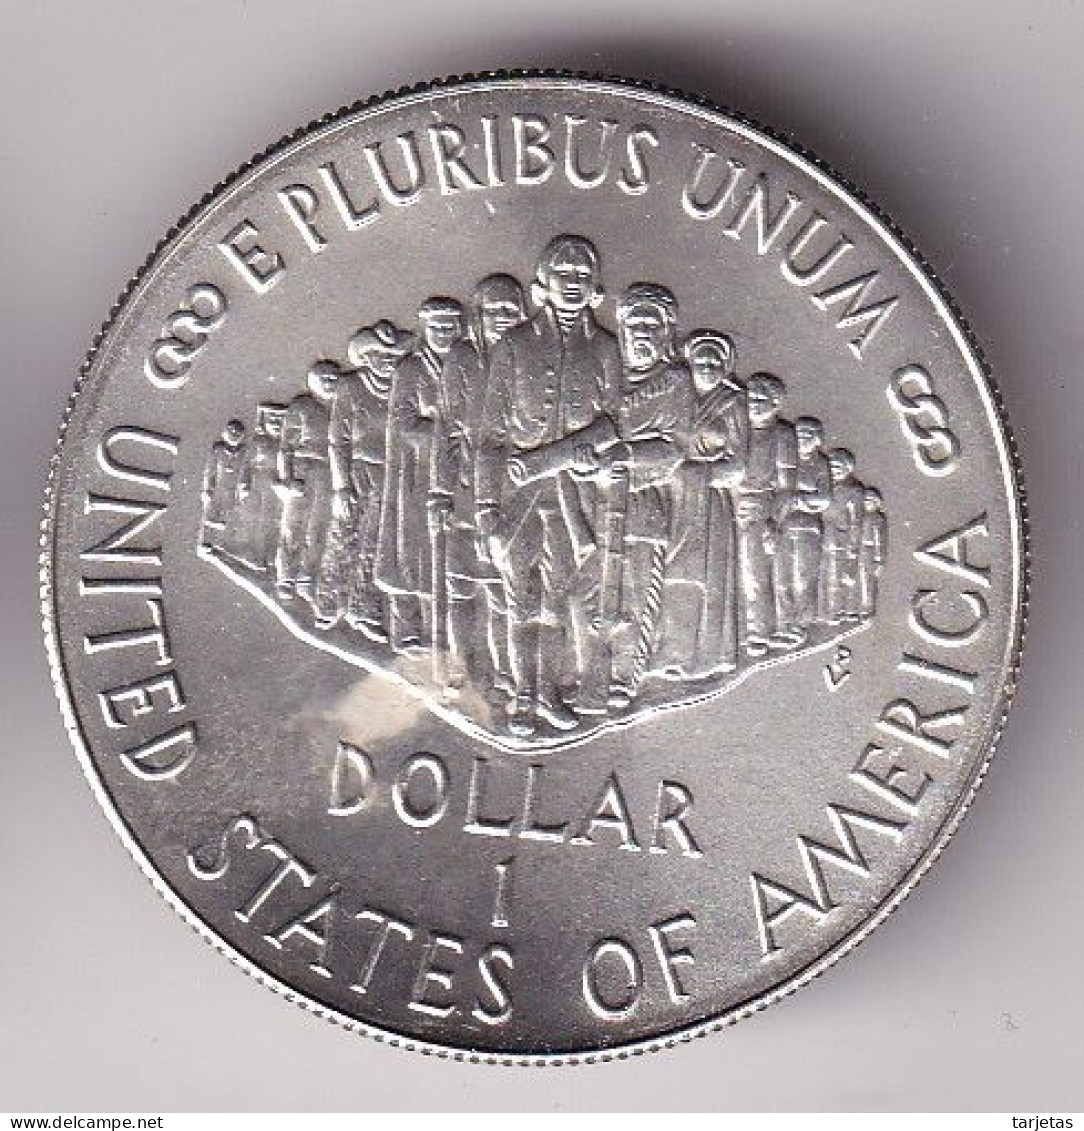 MONEDA DE PLATA DE ESTADOS UNIDOS DE 1 DOLLAR DEL AÑO 1987 (SILVER-ARGENT) - Commemoratives